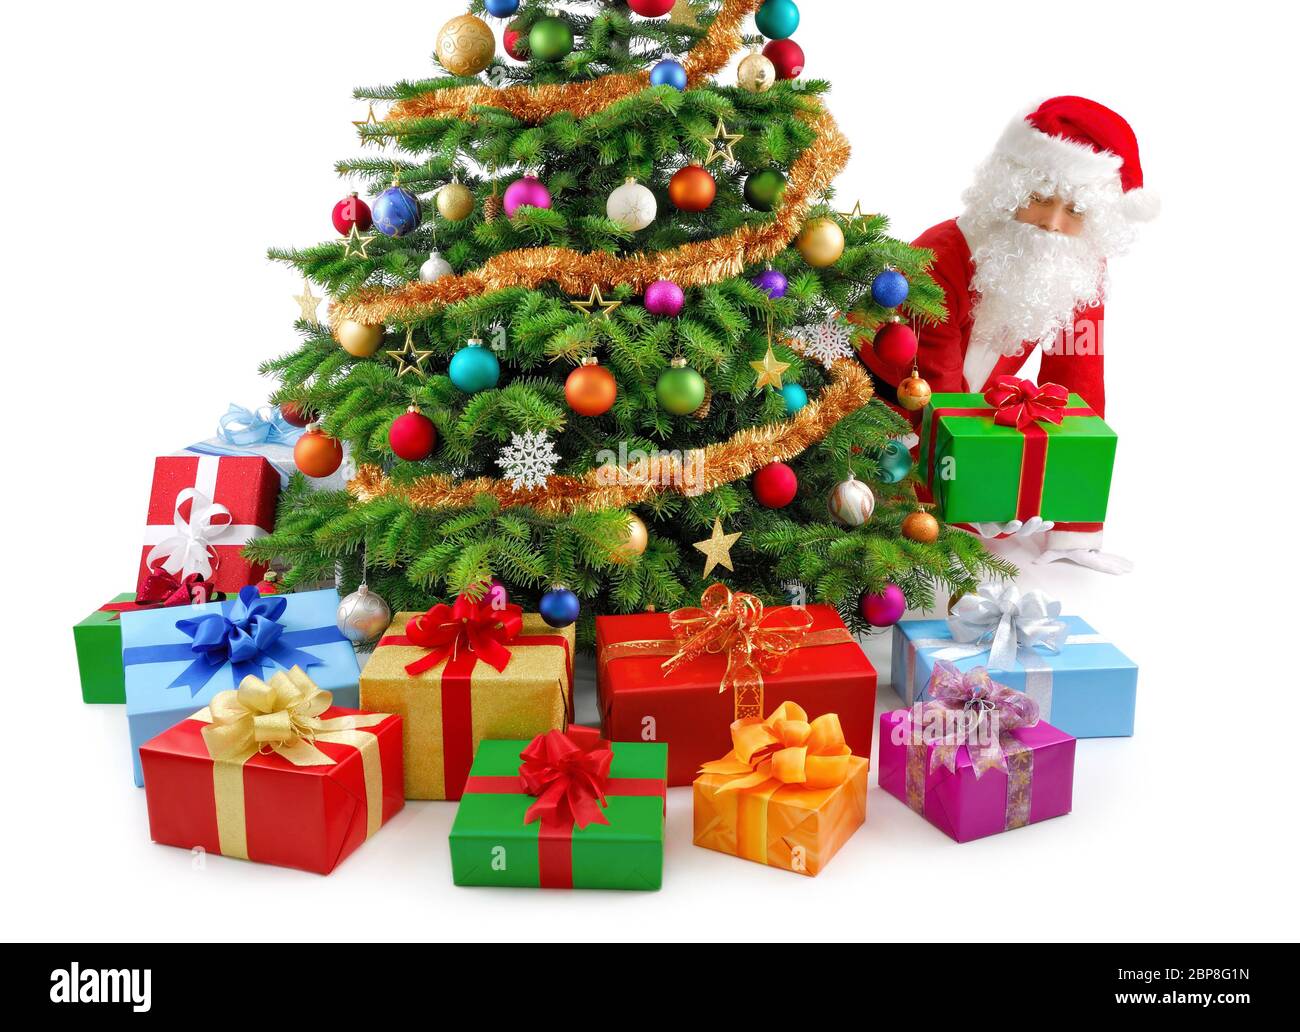 Weihnachtsmann kniet und neben Weihnachtsbaum high die Geschenke hin Banque D'Images